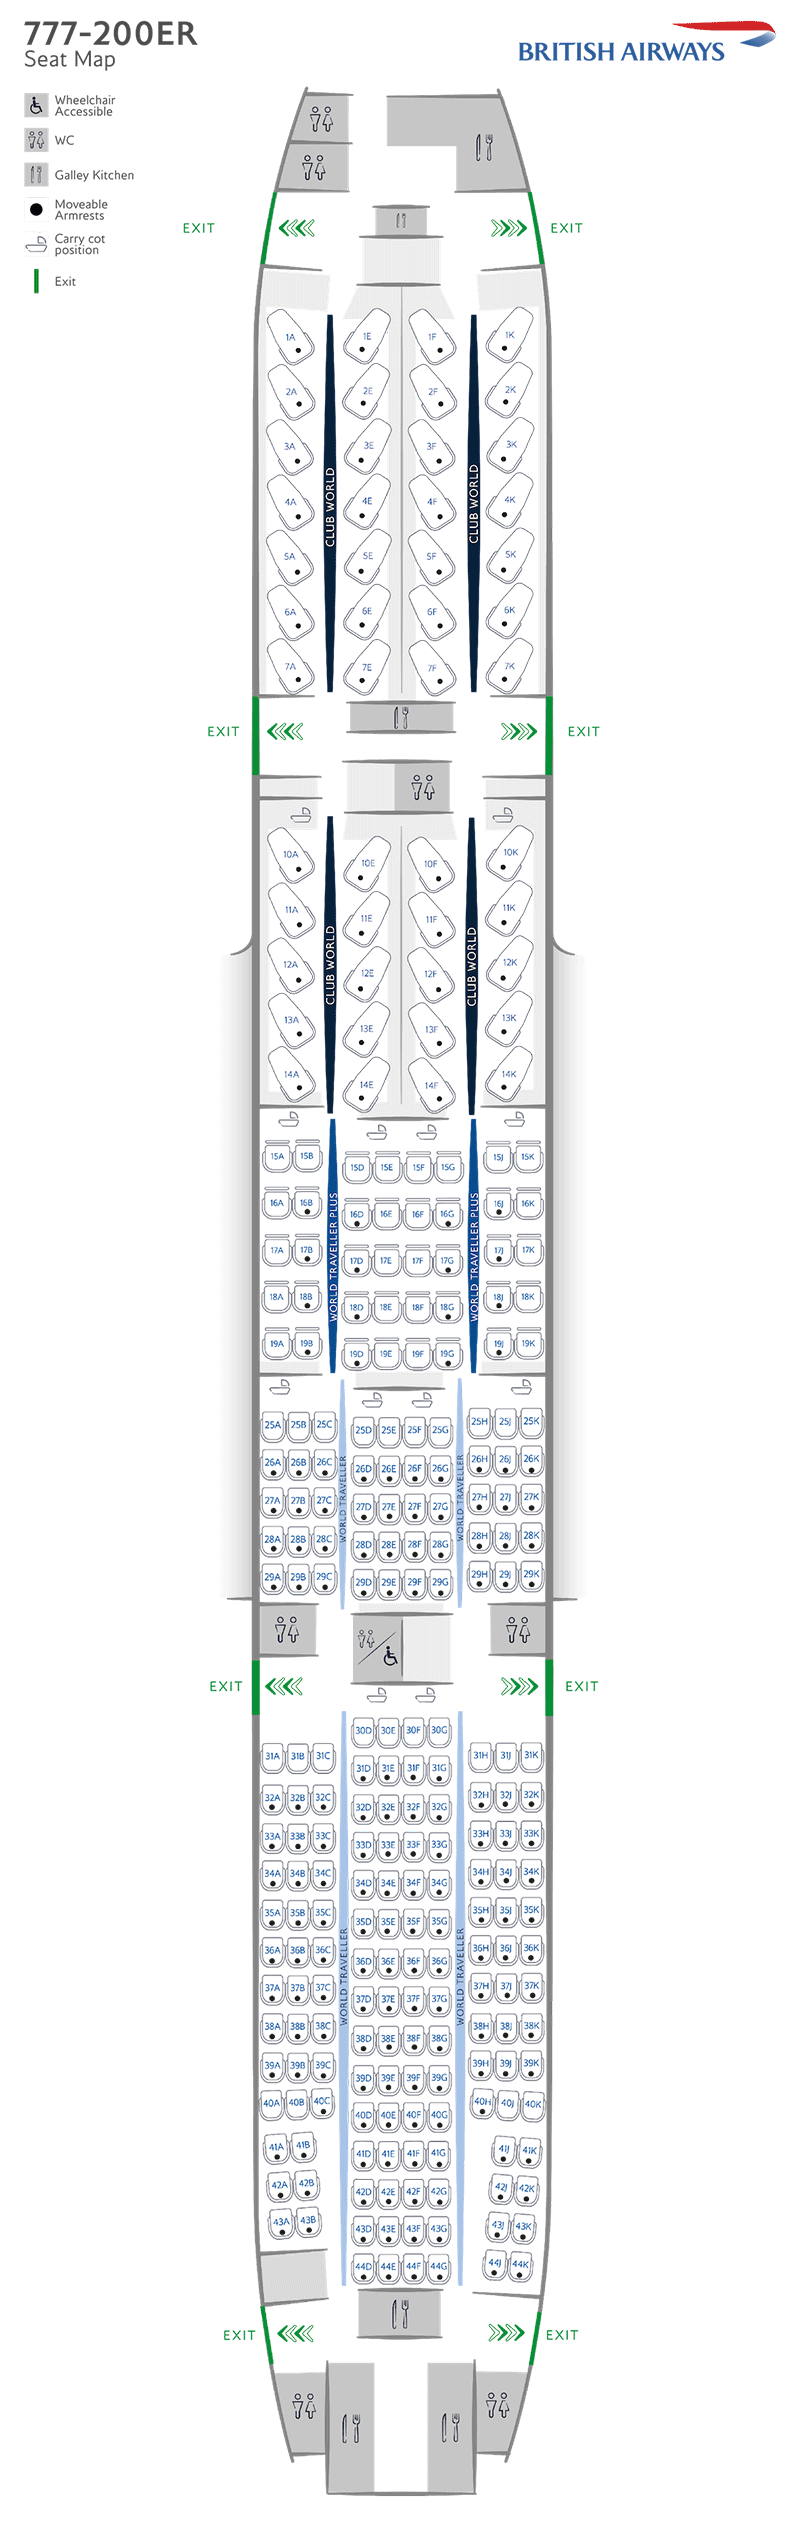 Mapa de asientos del B777-200ER